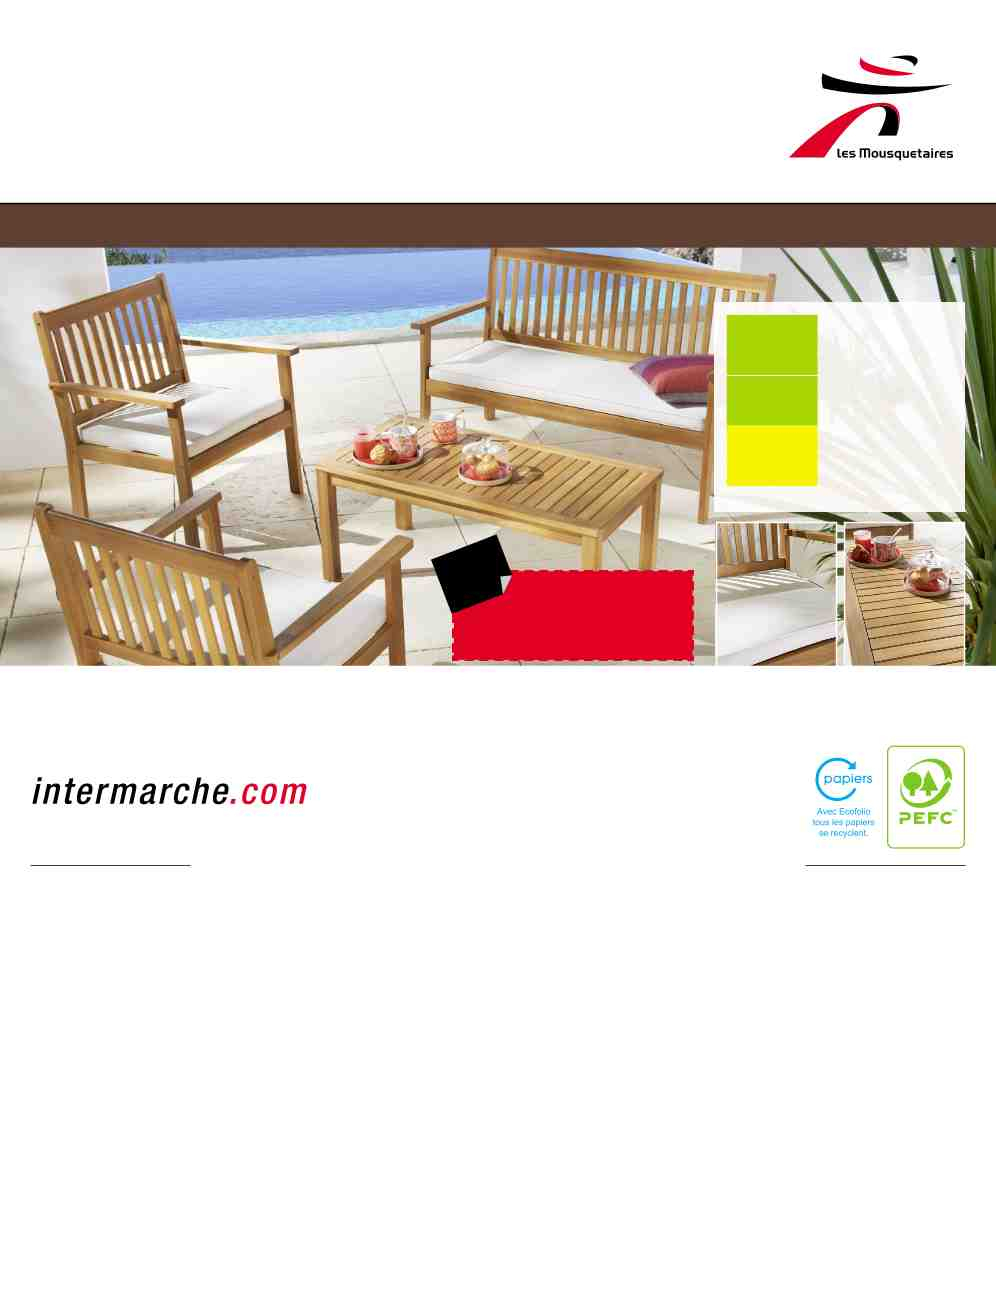 Salon De Jardin Intermarche Avril 2014 concernant Intermarché Table De Jardin